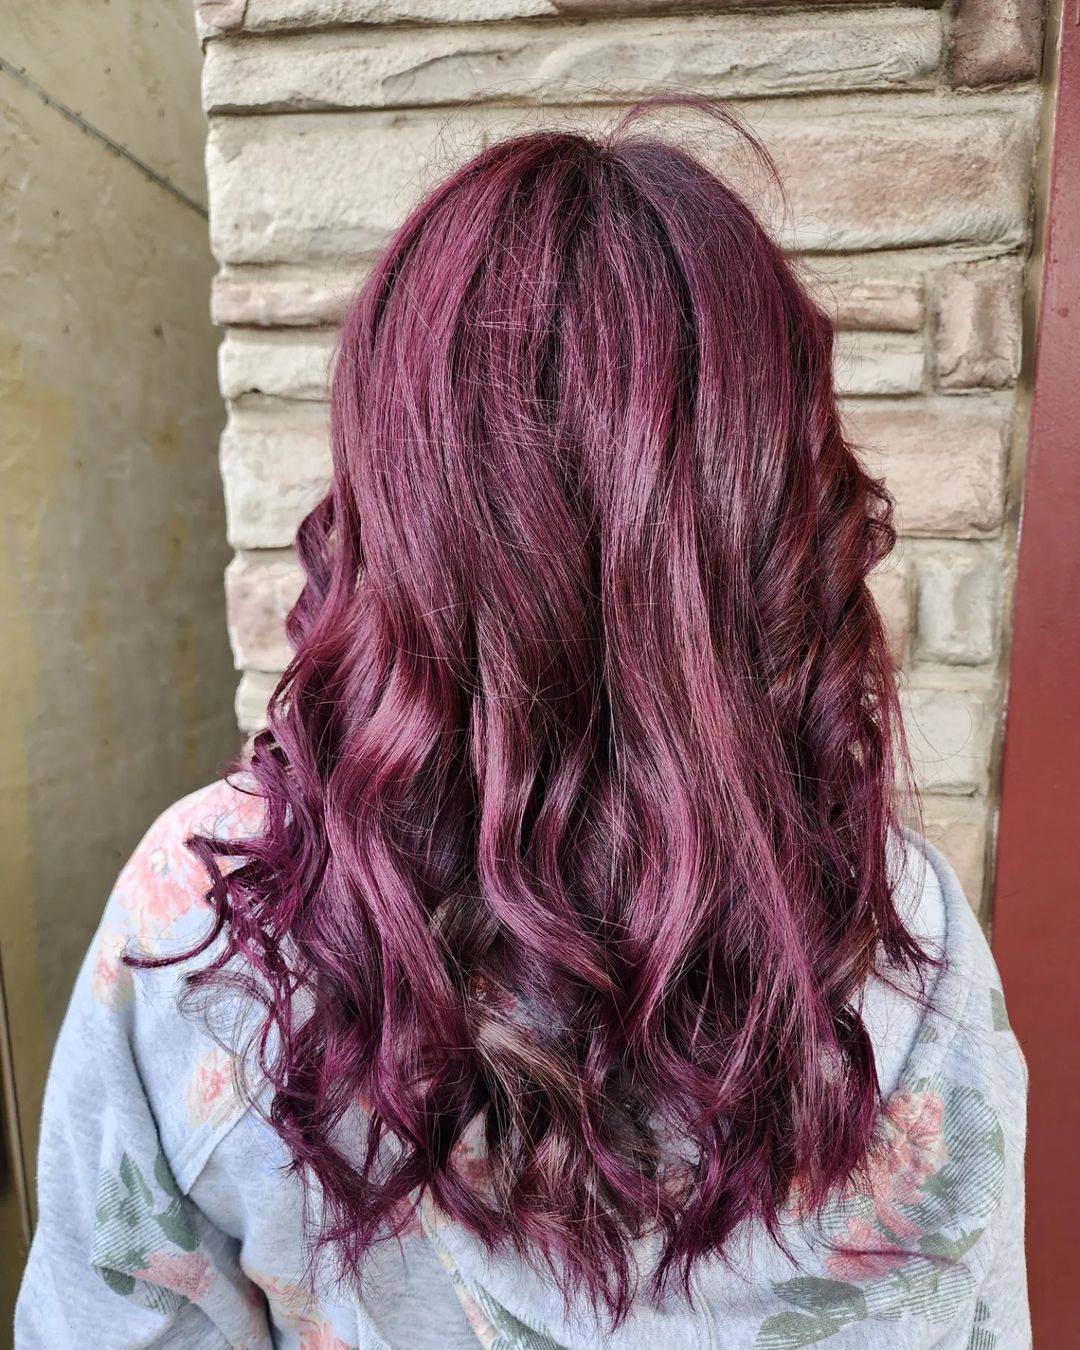 Burgundy hair color 227 burgundy hair color | burgundy hair color for women | burgundy hair color highlights Burgundy Hair Color